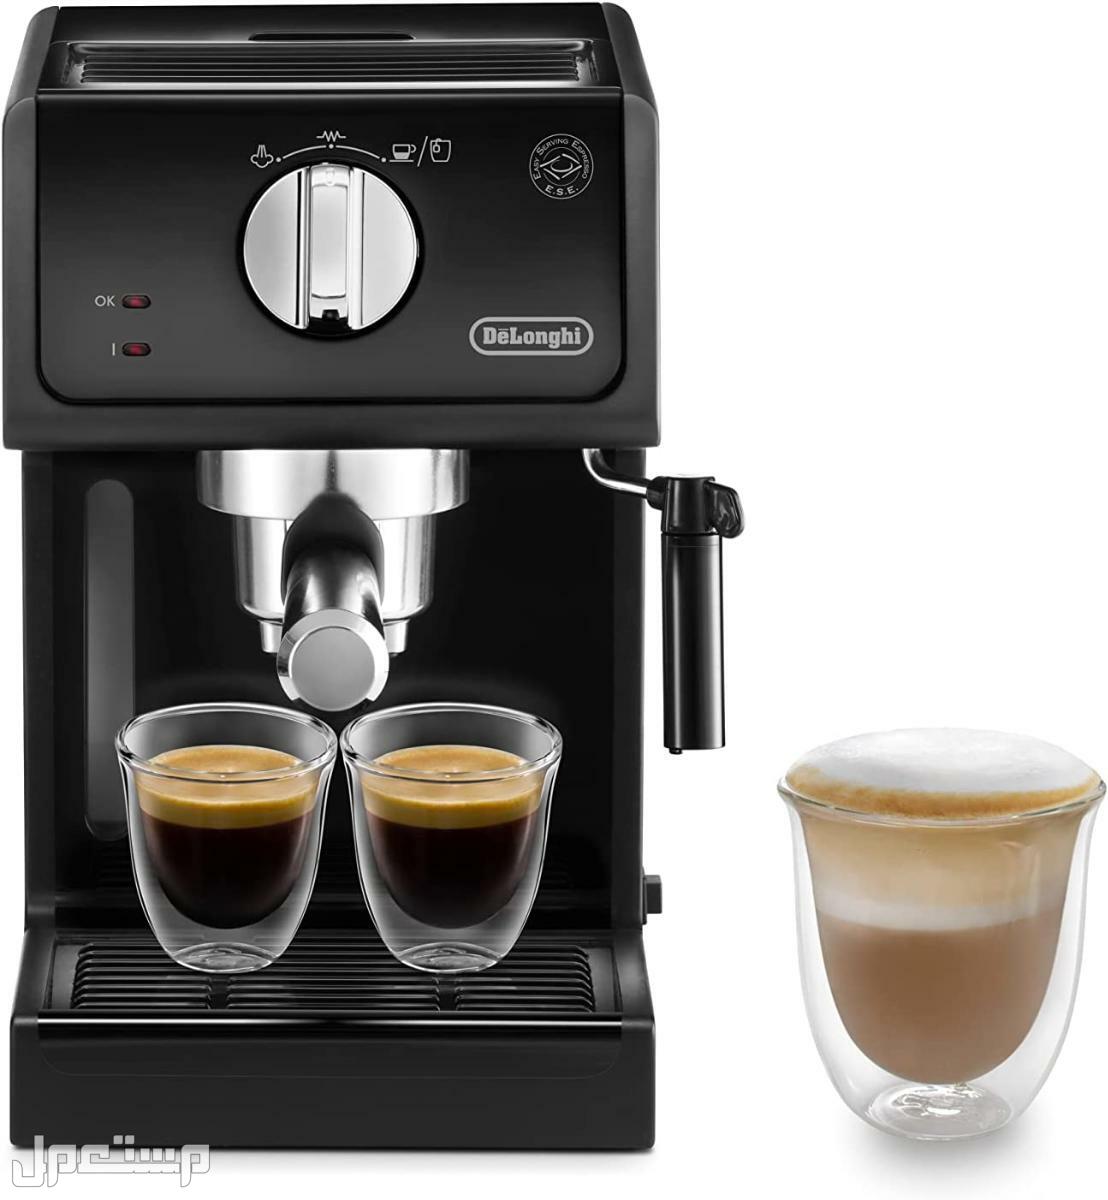 عيوب ومميزات ومواصفات وسعر ماكينة قهوة ديلونجى ديديكا في عمان لماذا عليك شراء ماكينة قهوة ديلونجي ديديكا ؟